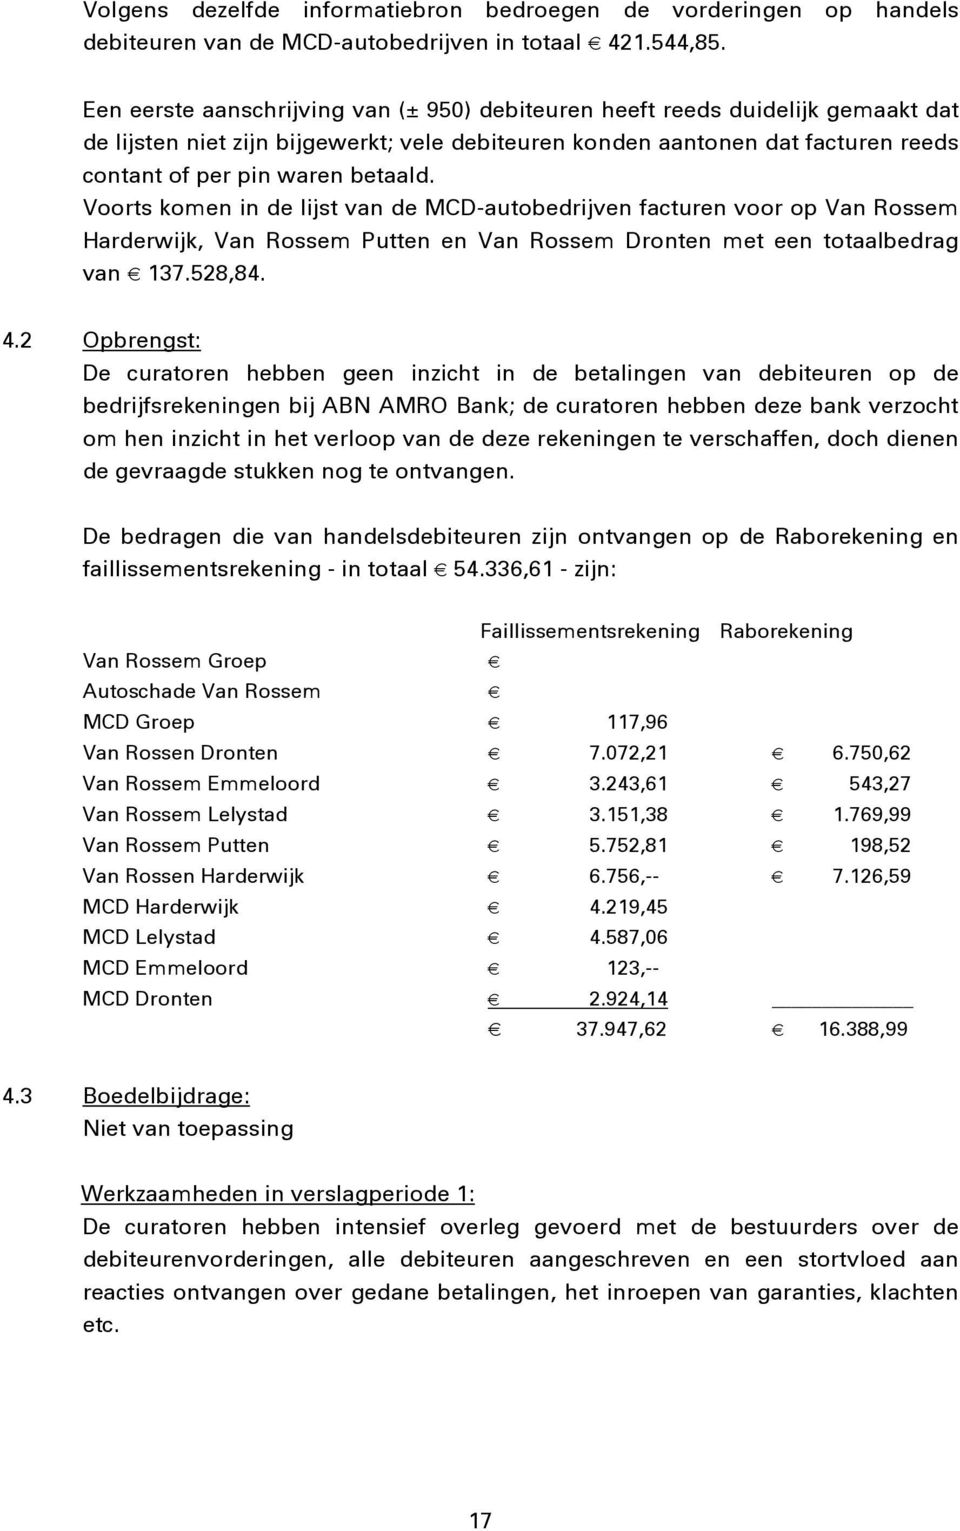 Voorts komen in de lijst van de MCD-autobedrijven facturen voor op Van Rossem Harderwijk, Van Rossem Putten en Van Rossem Dronten met een totaalbedrag van 137.528,84. 4.